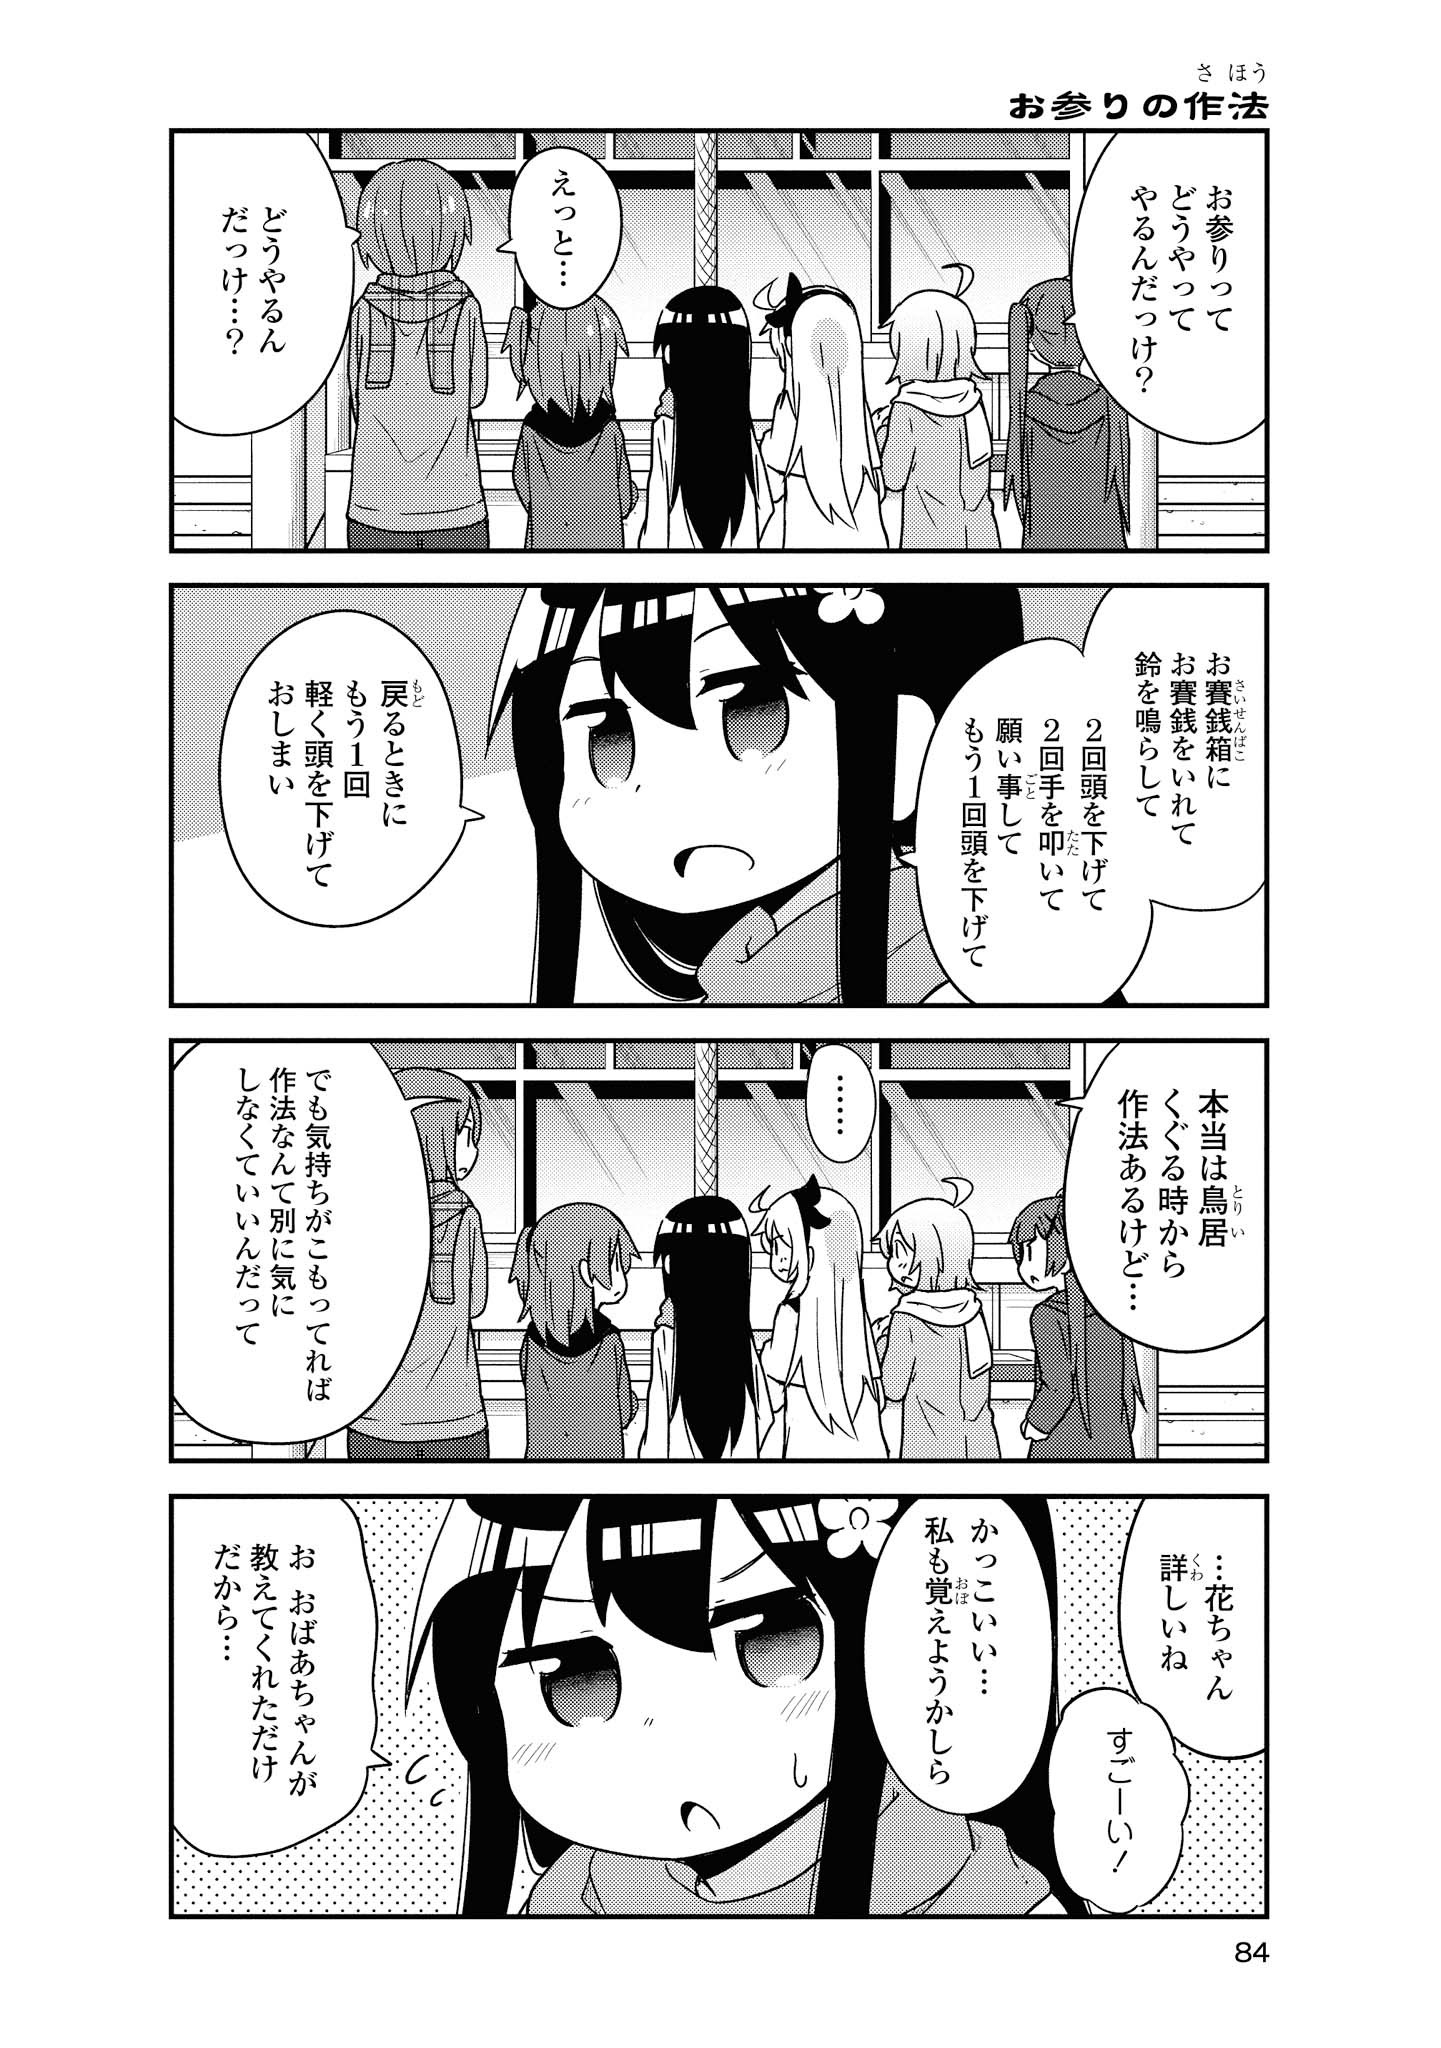 Watashi ni Tenshi ga Maiorita! - Chapter 48 - Page 14